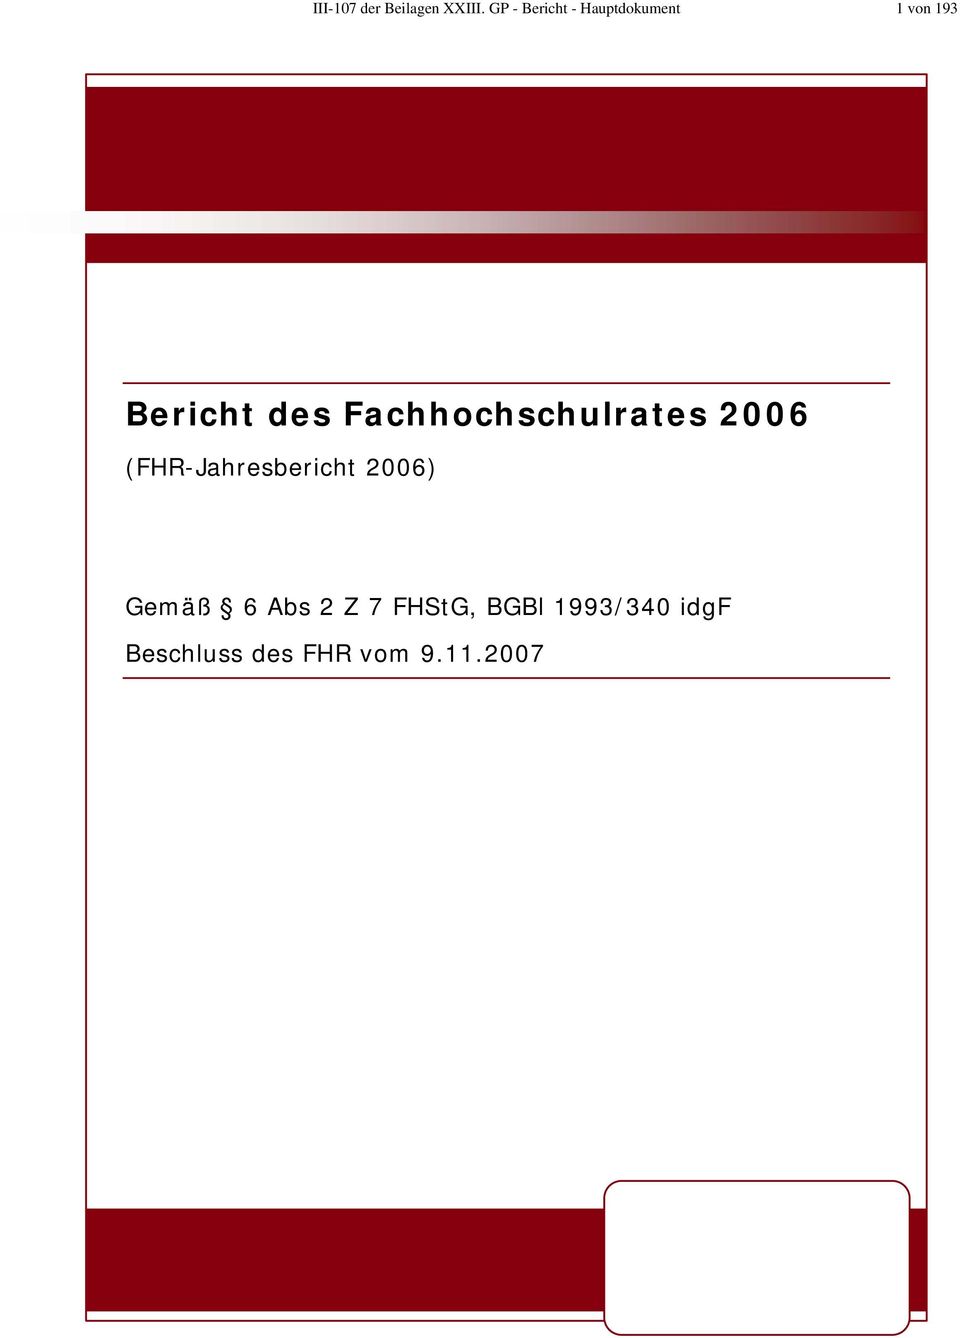 Fachhochschulrates 2006 (FHR-Jahresbericht 2006)